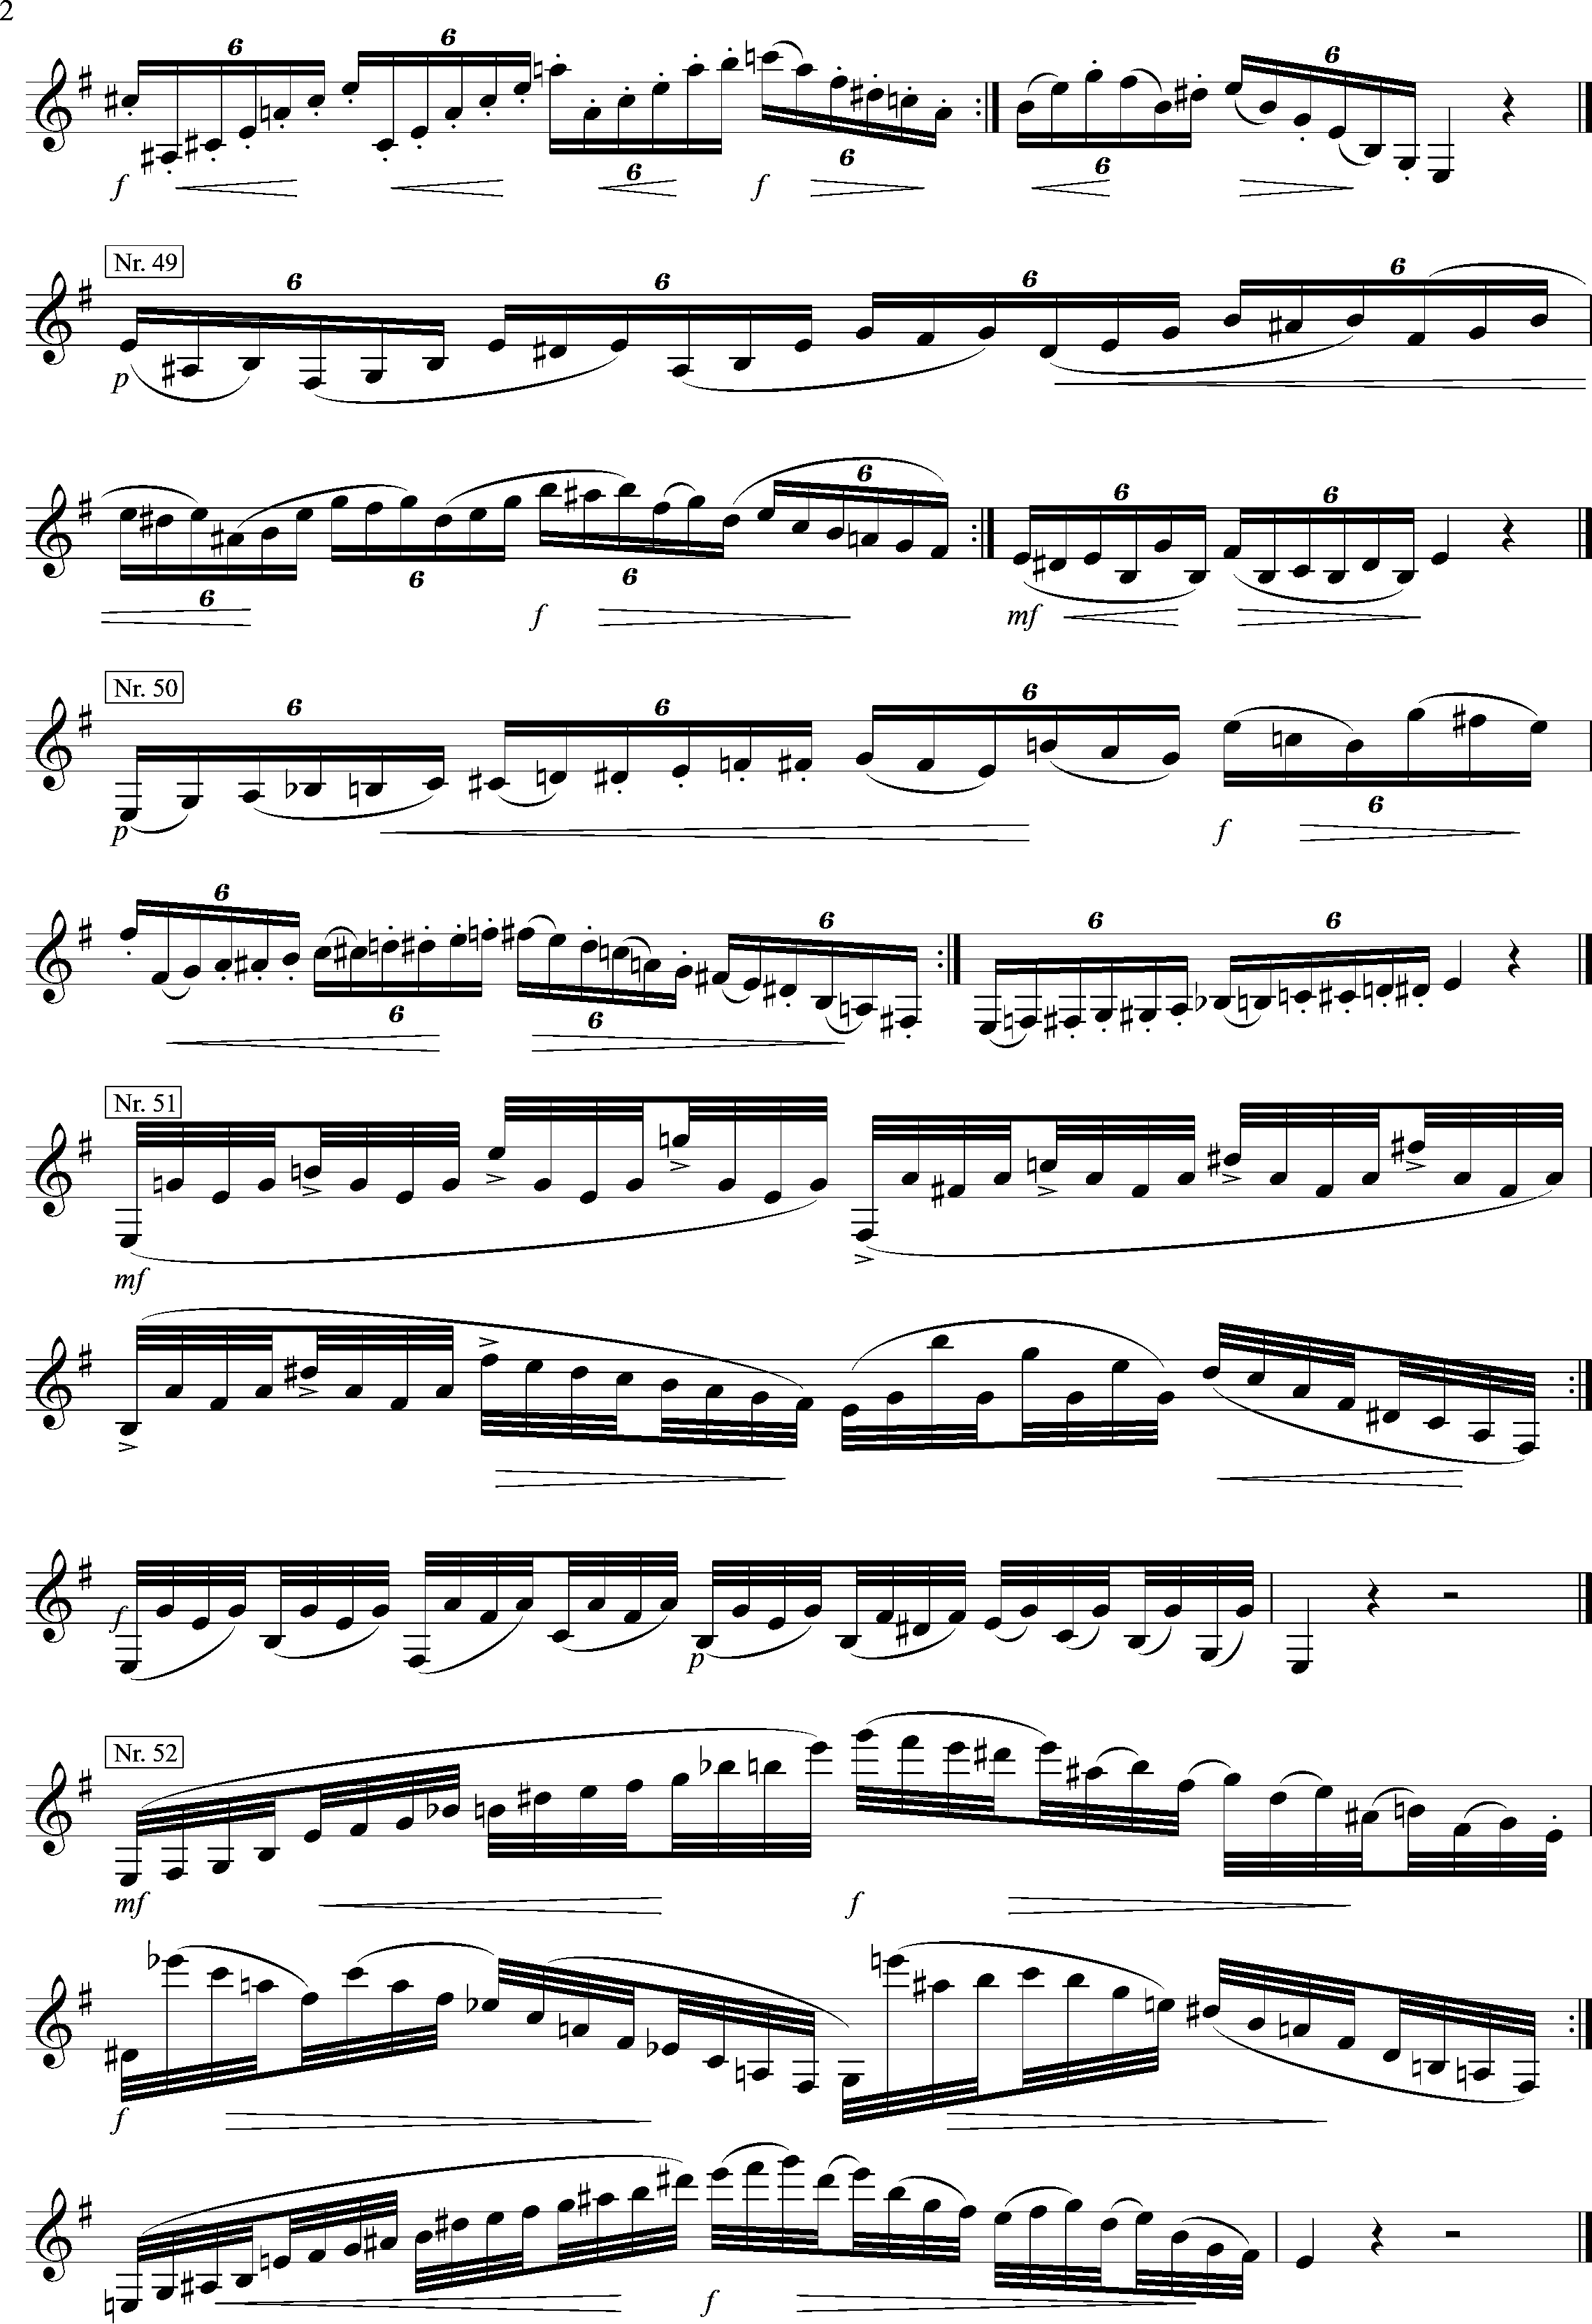 416 Etüden, Kröpsch, e-minor, Page 2